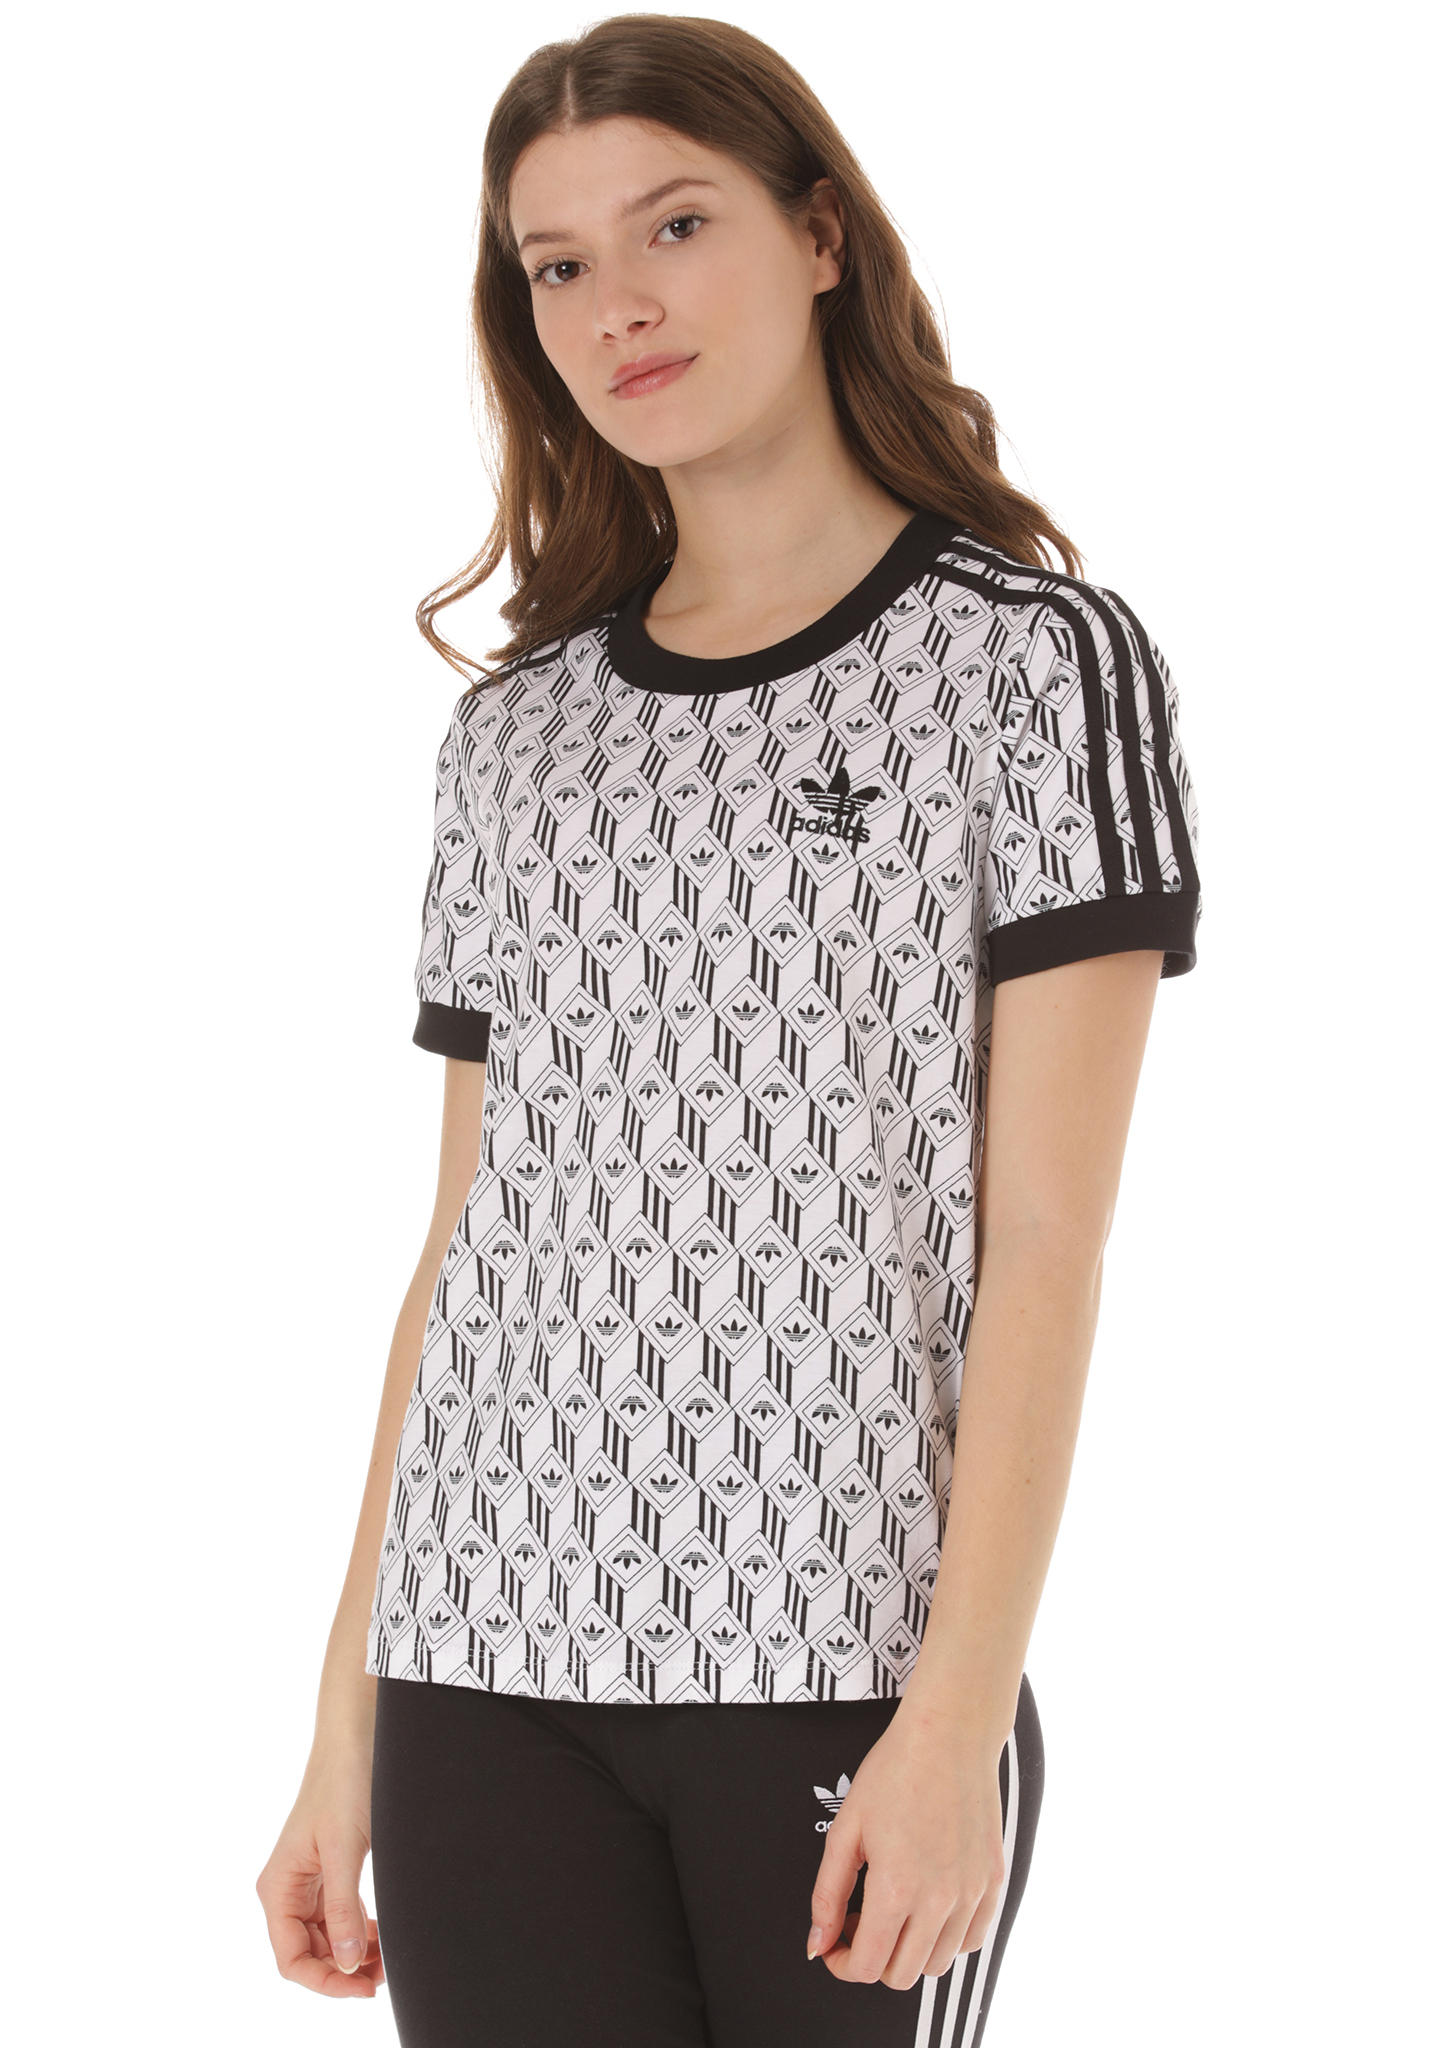 Adidas Originals 3-Stripes T-Shirt black-white 42